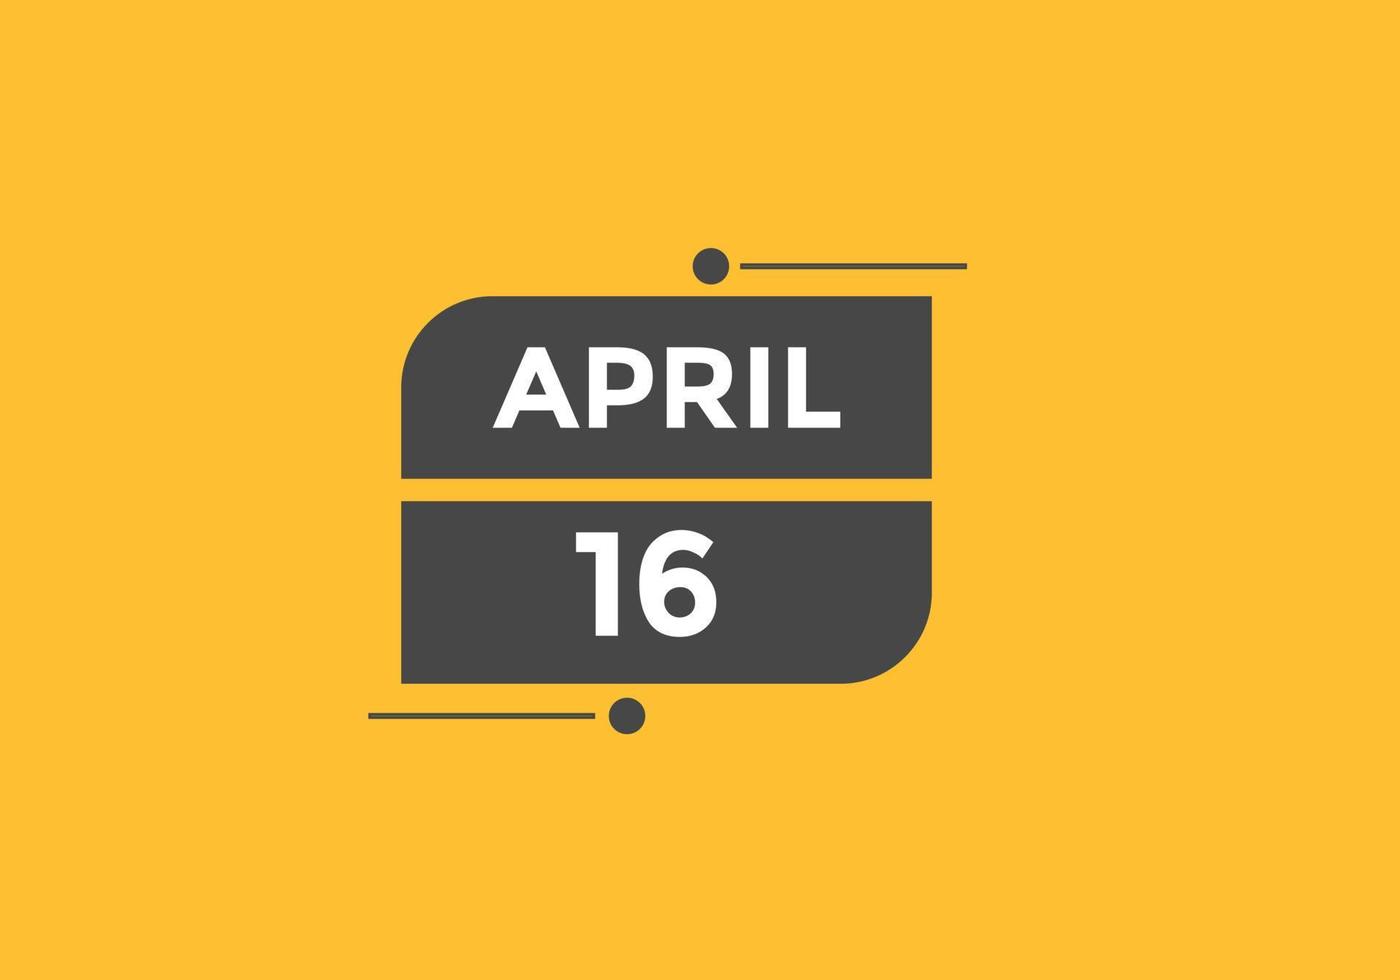 lembrete de calendário de 16 de abril. Modelo de ícone de calendário diário de 16 de abril. modelo de design de ícone de calendário 16 de abril. ilustração vetorial vetor